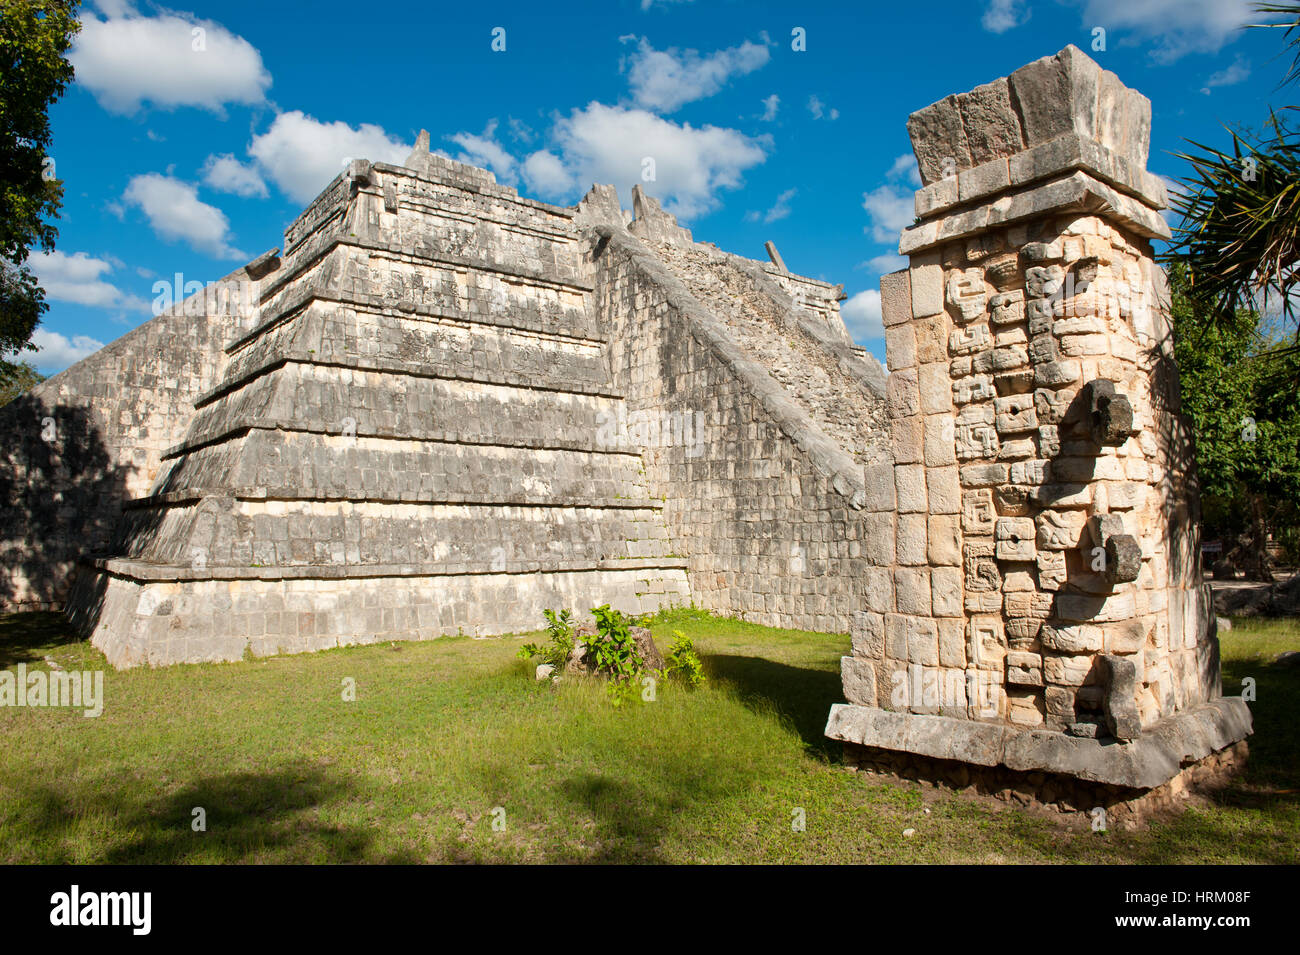 Pyramid temple at Chichen Itza, Yucatan, Mexico. Stock Photo